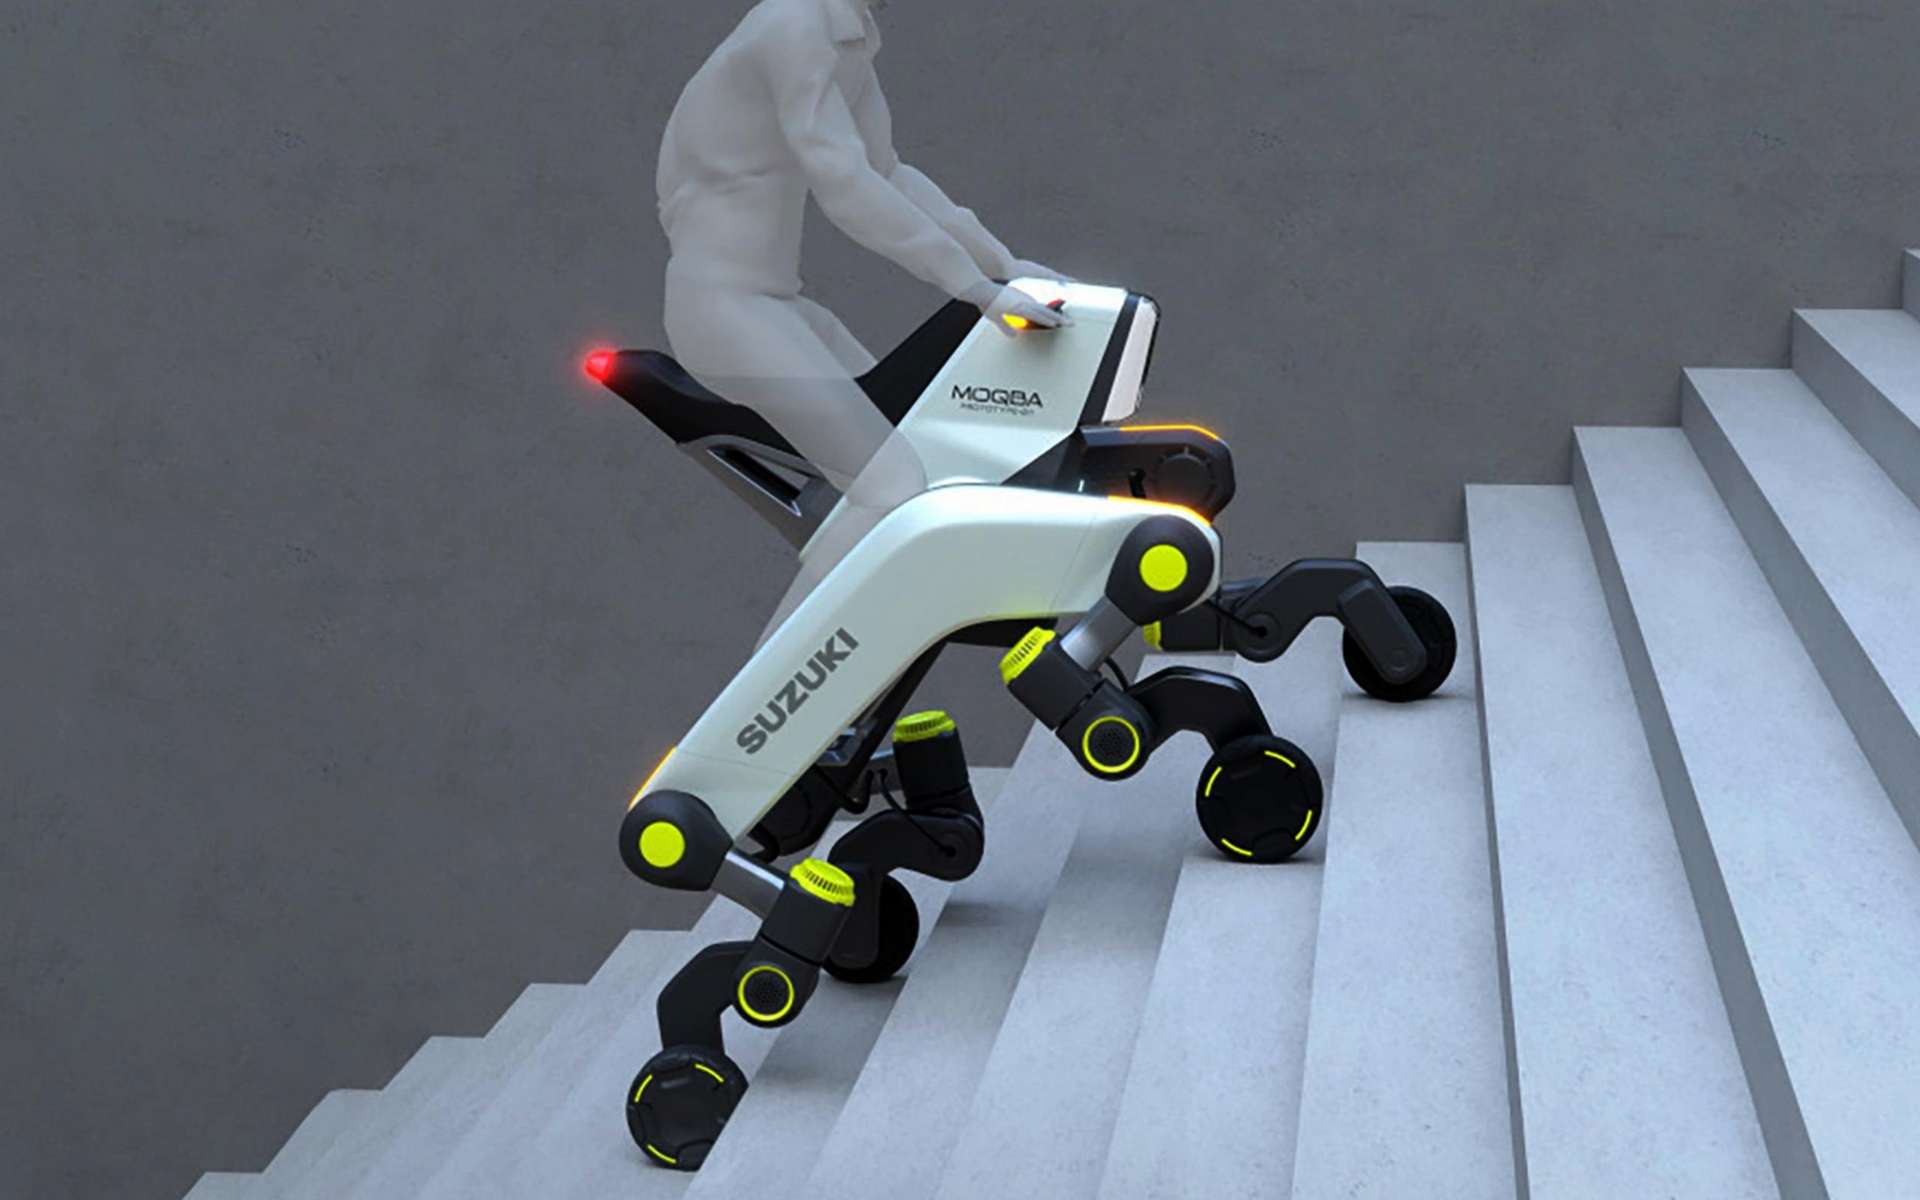 Suzuki repousse les frontières avec un quad hybride sur 4 « jambes » capable de monter les escaliers